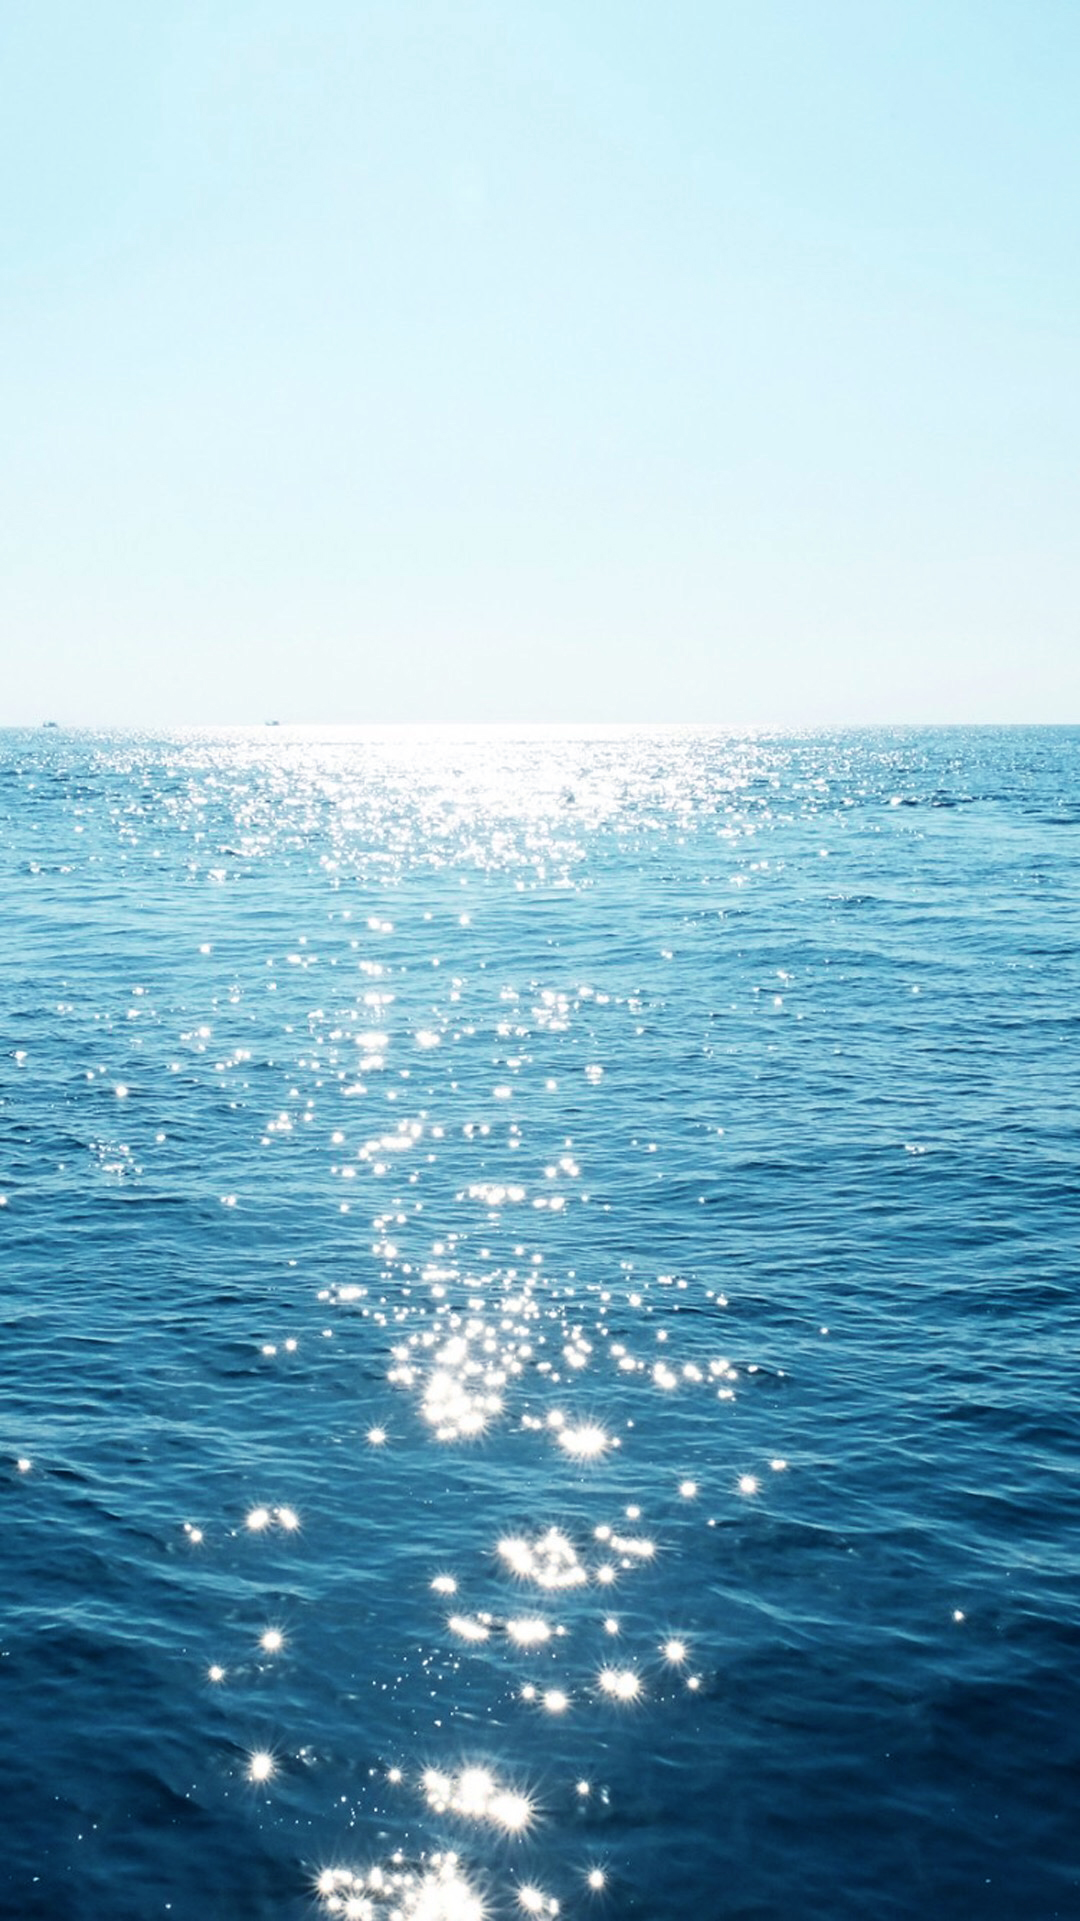 喜欢阳光照射在海面上的样子,按奈不住想看海的心!